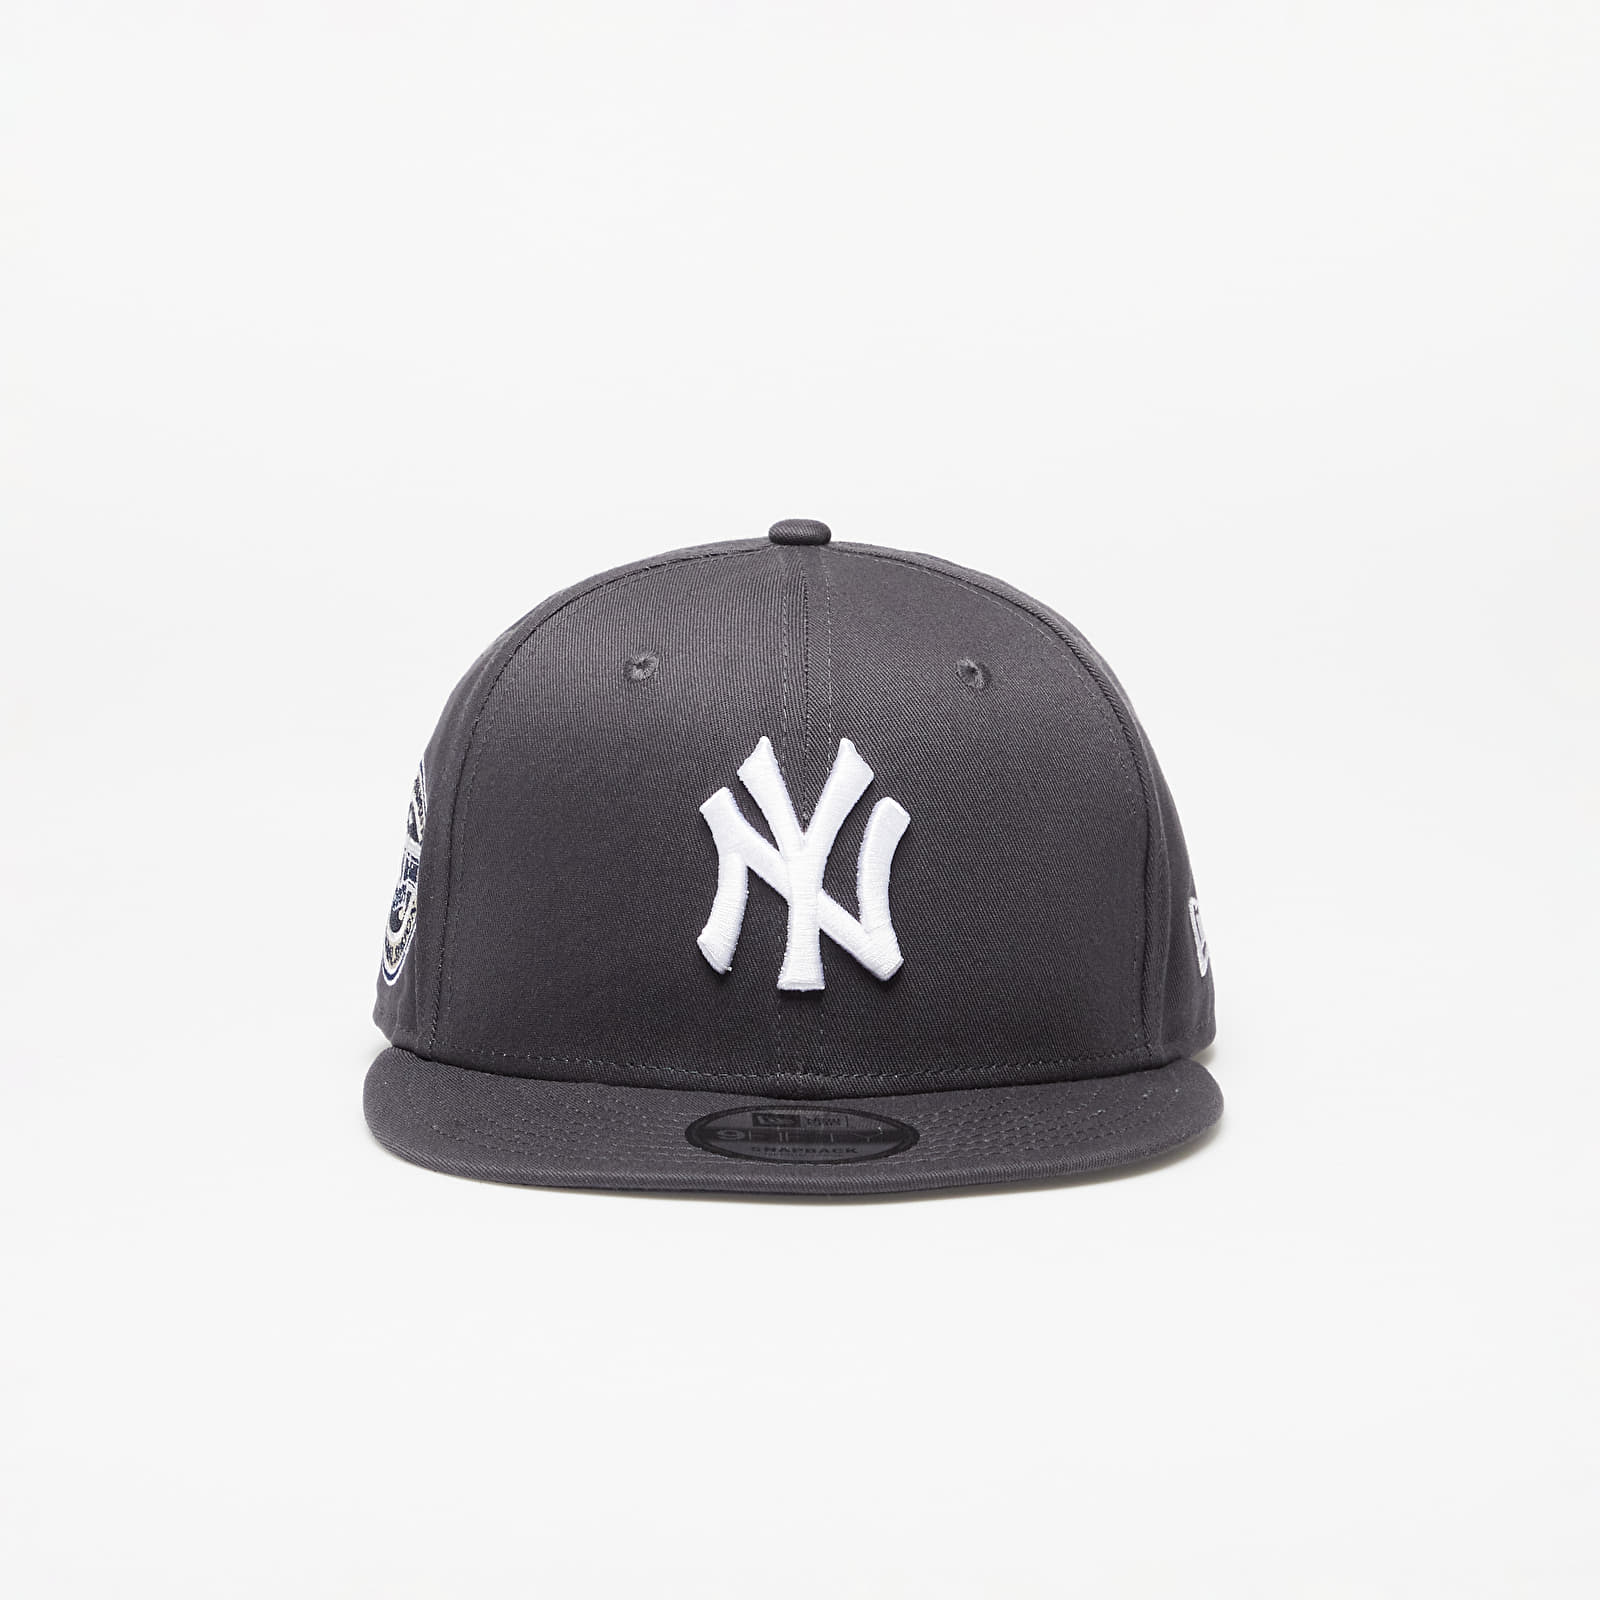 New Era - new york yankees new traditions 9fifty snapback cap graphite/dark graphite/ navy